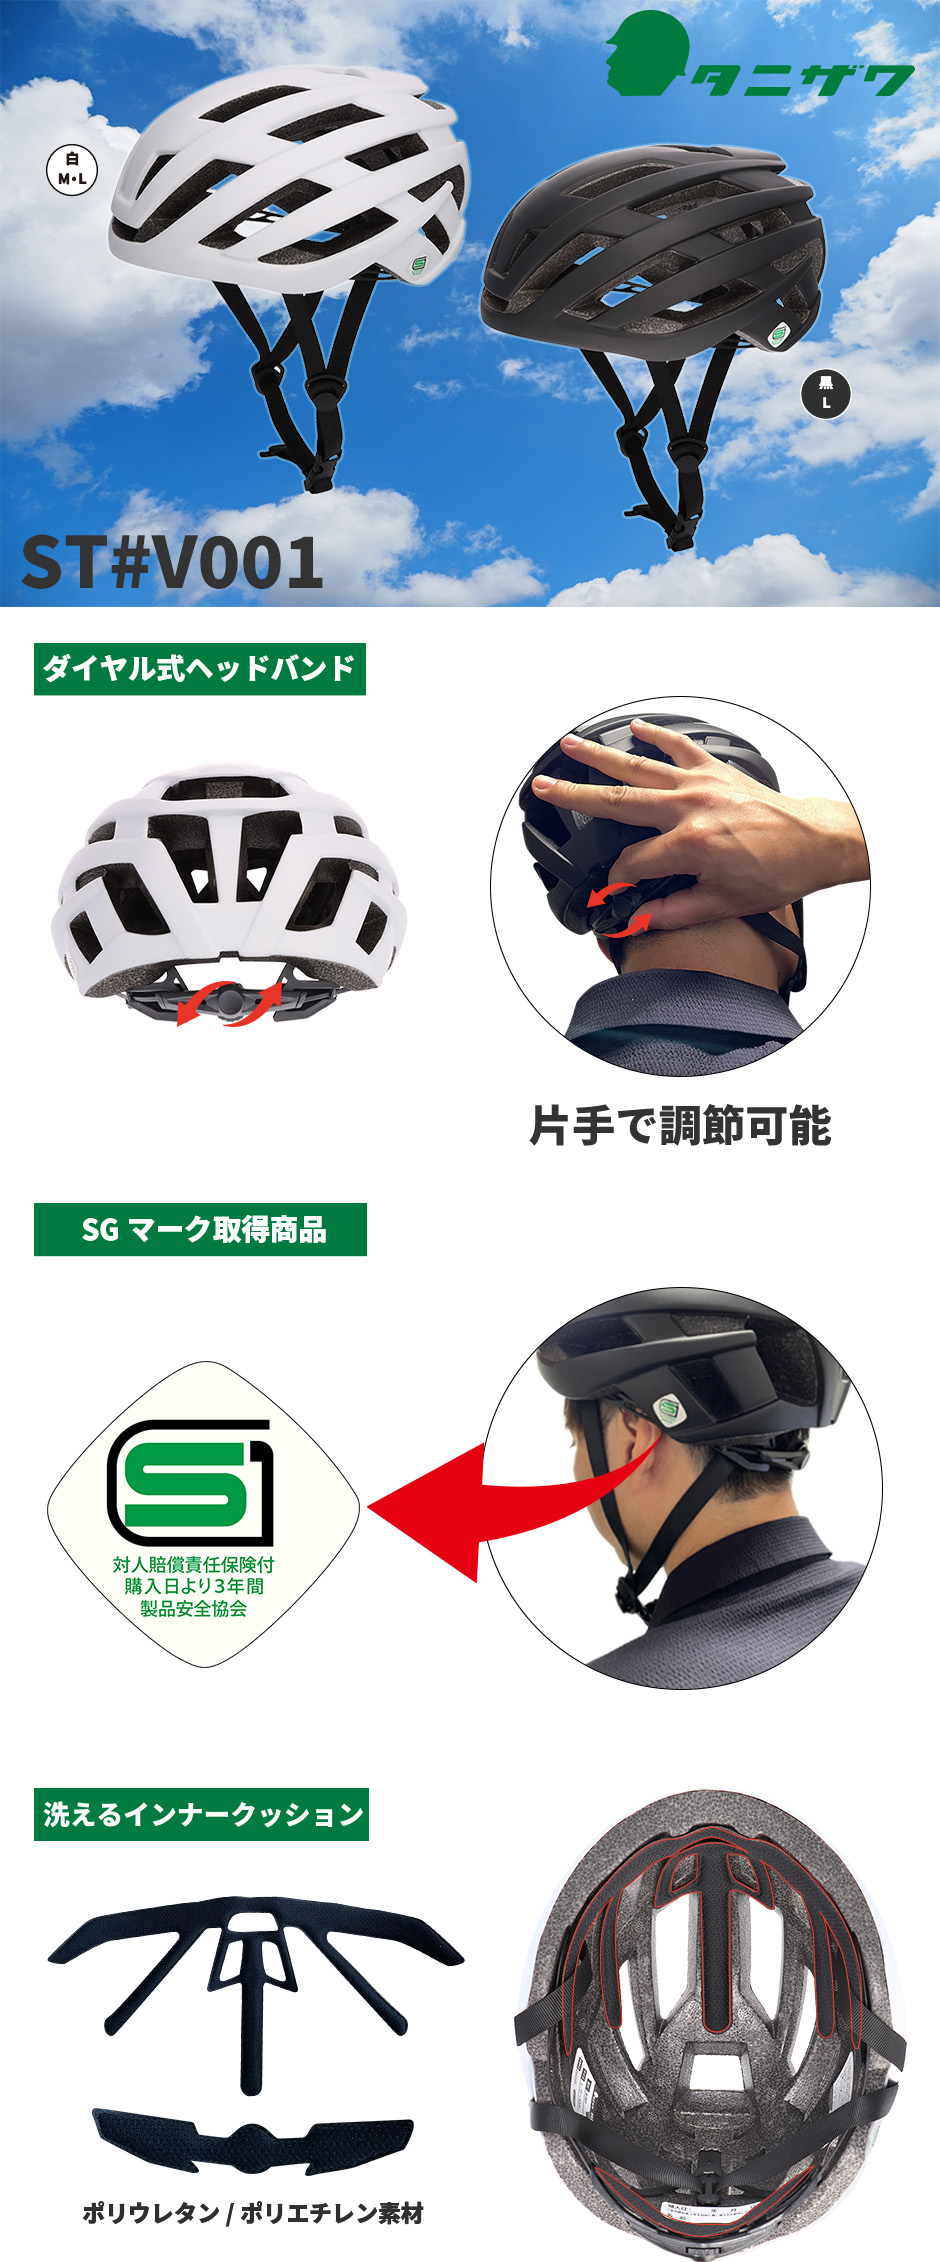 ST#V001 谷沢製作所 自転車用ヘルメット SG規格 自転車 ヘルメット 義務化対応 簡単調整